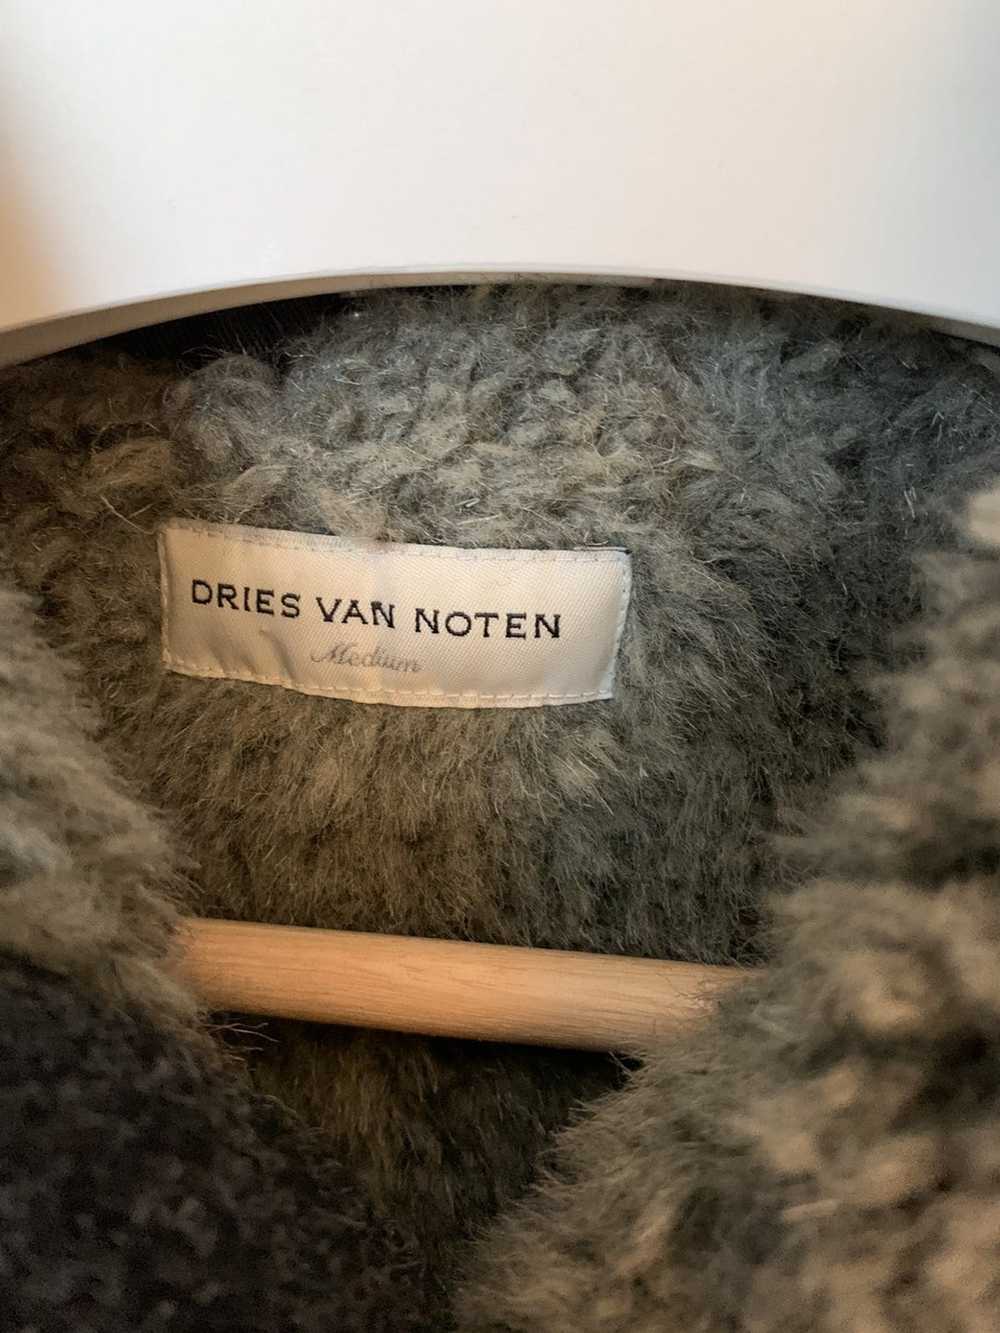 Dries Van Noten Dries shearling wool jacket - image 3